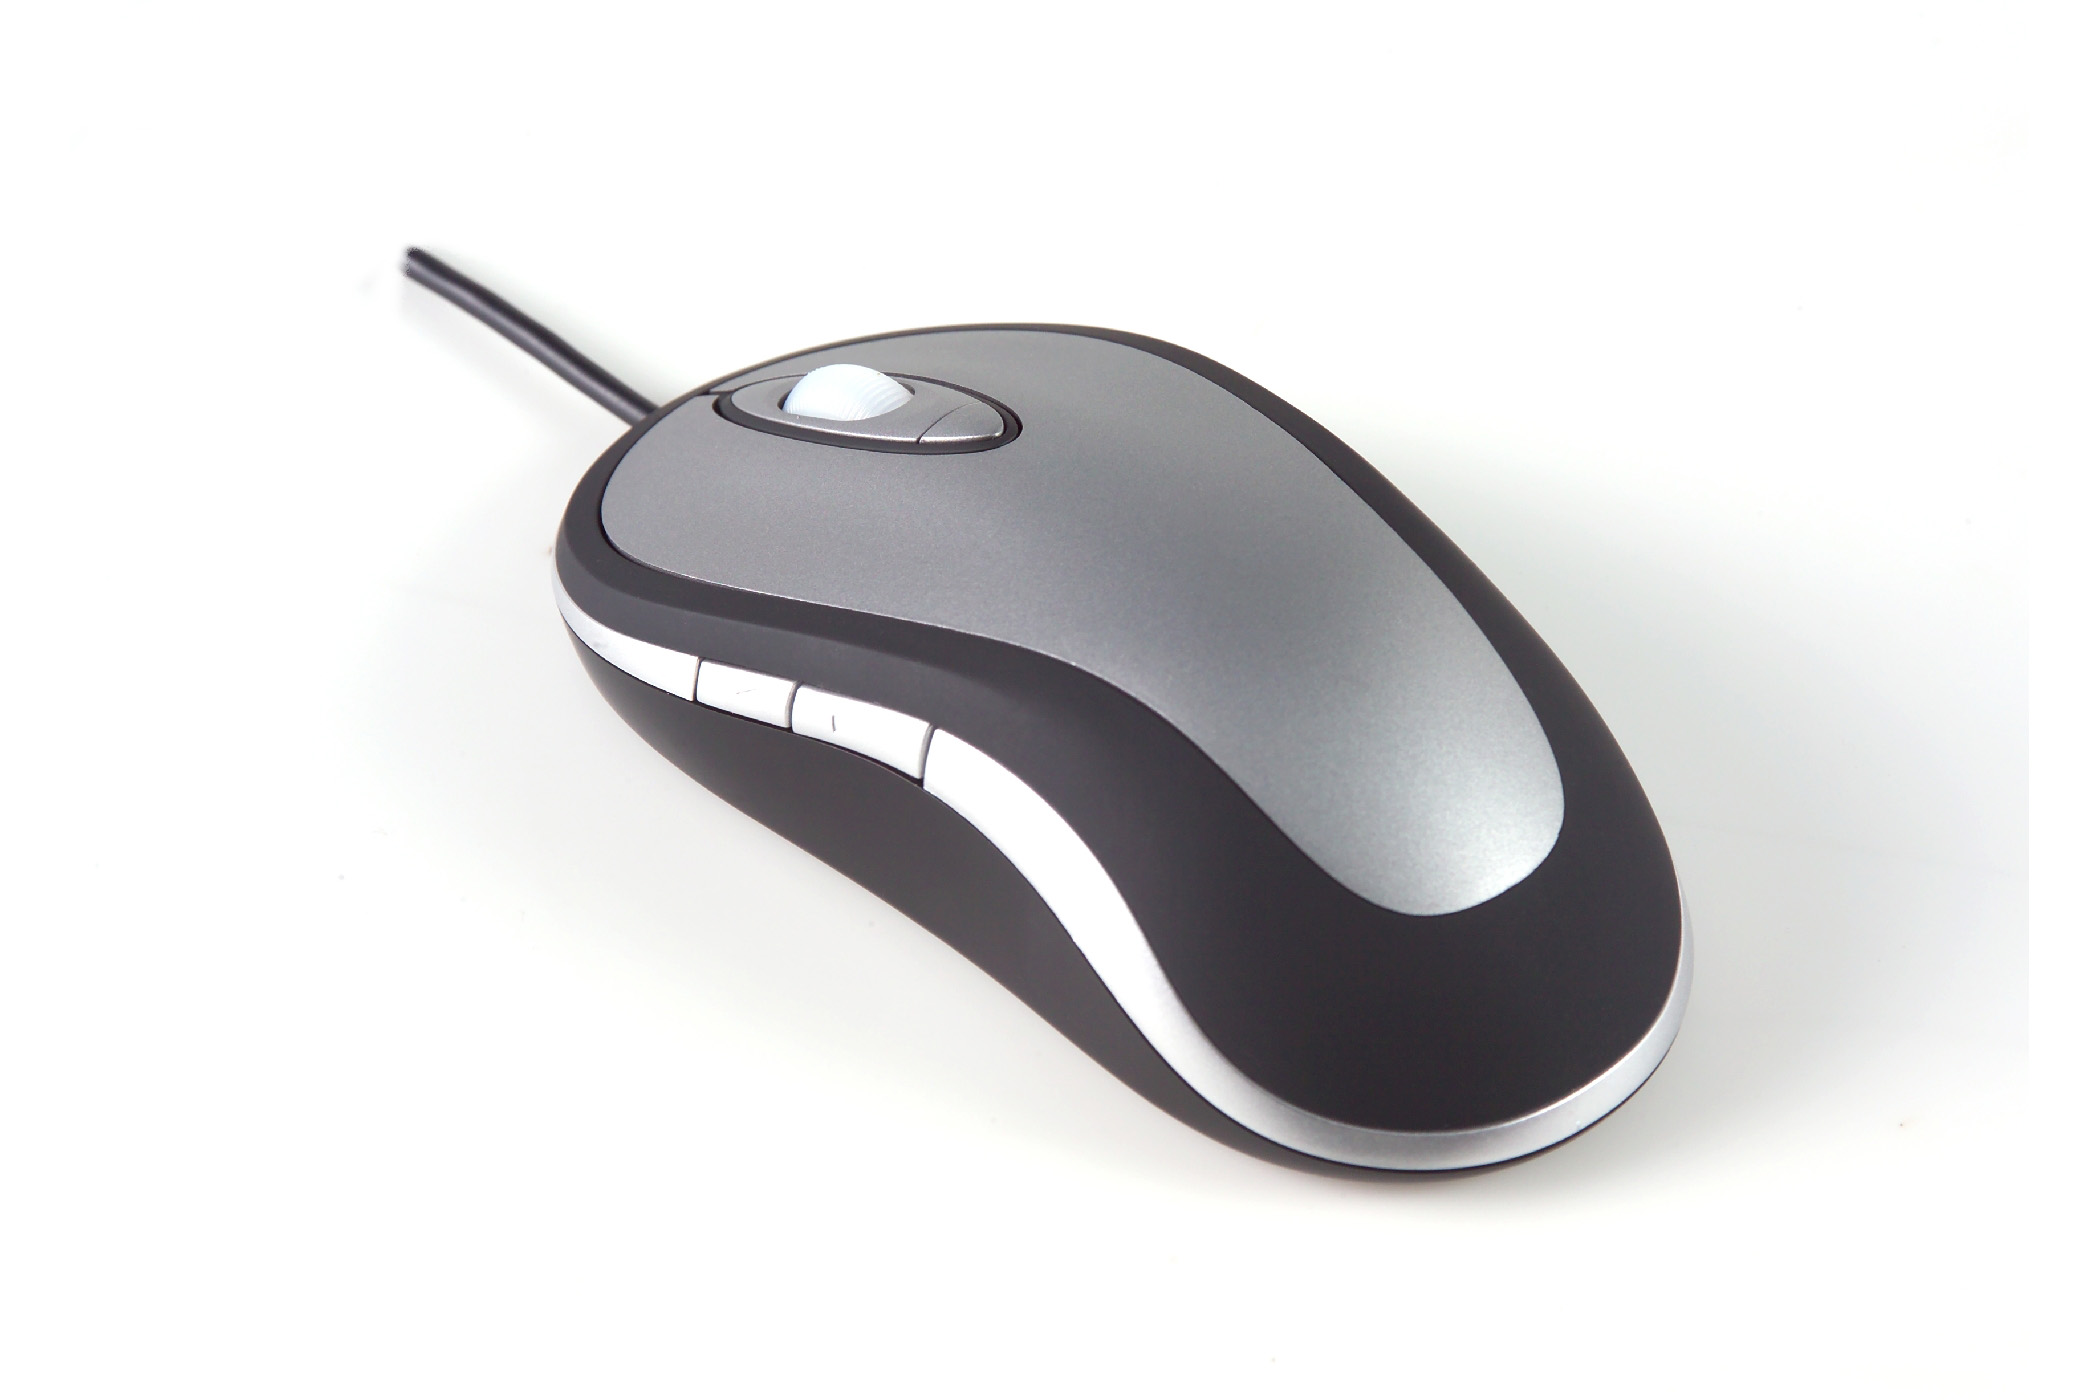 laser-mouse-design-laser-mouse-1395148228